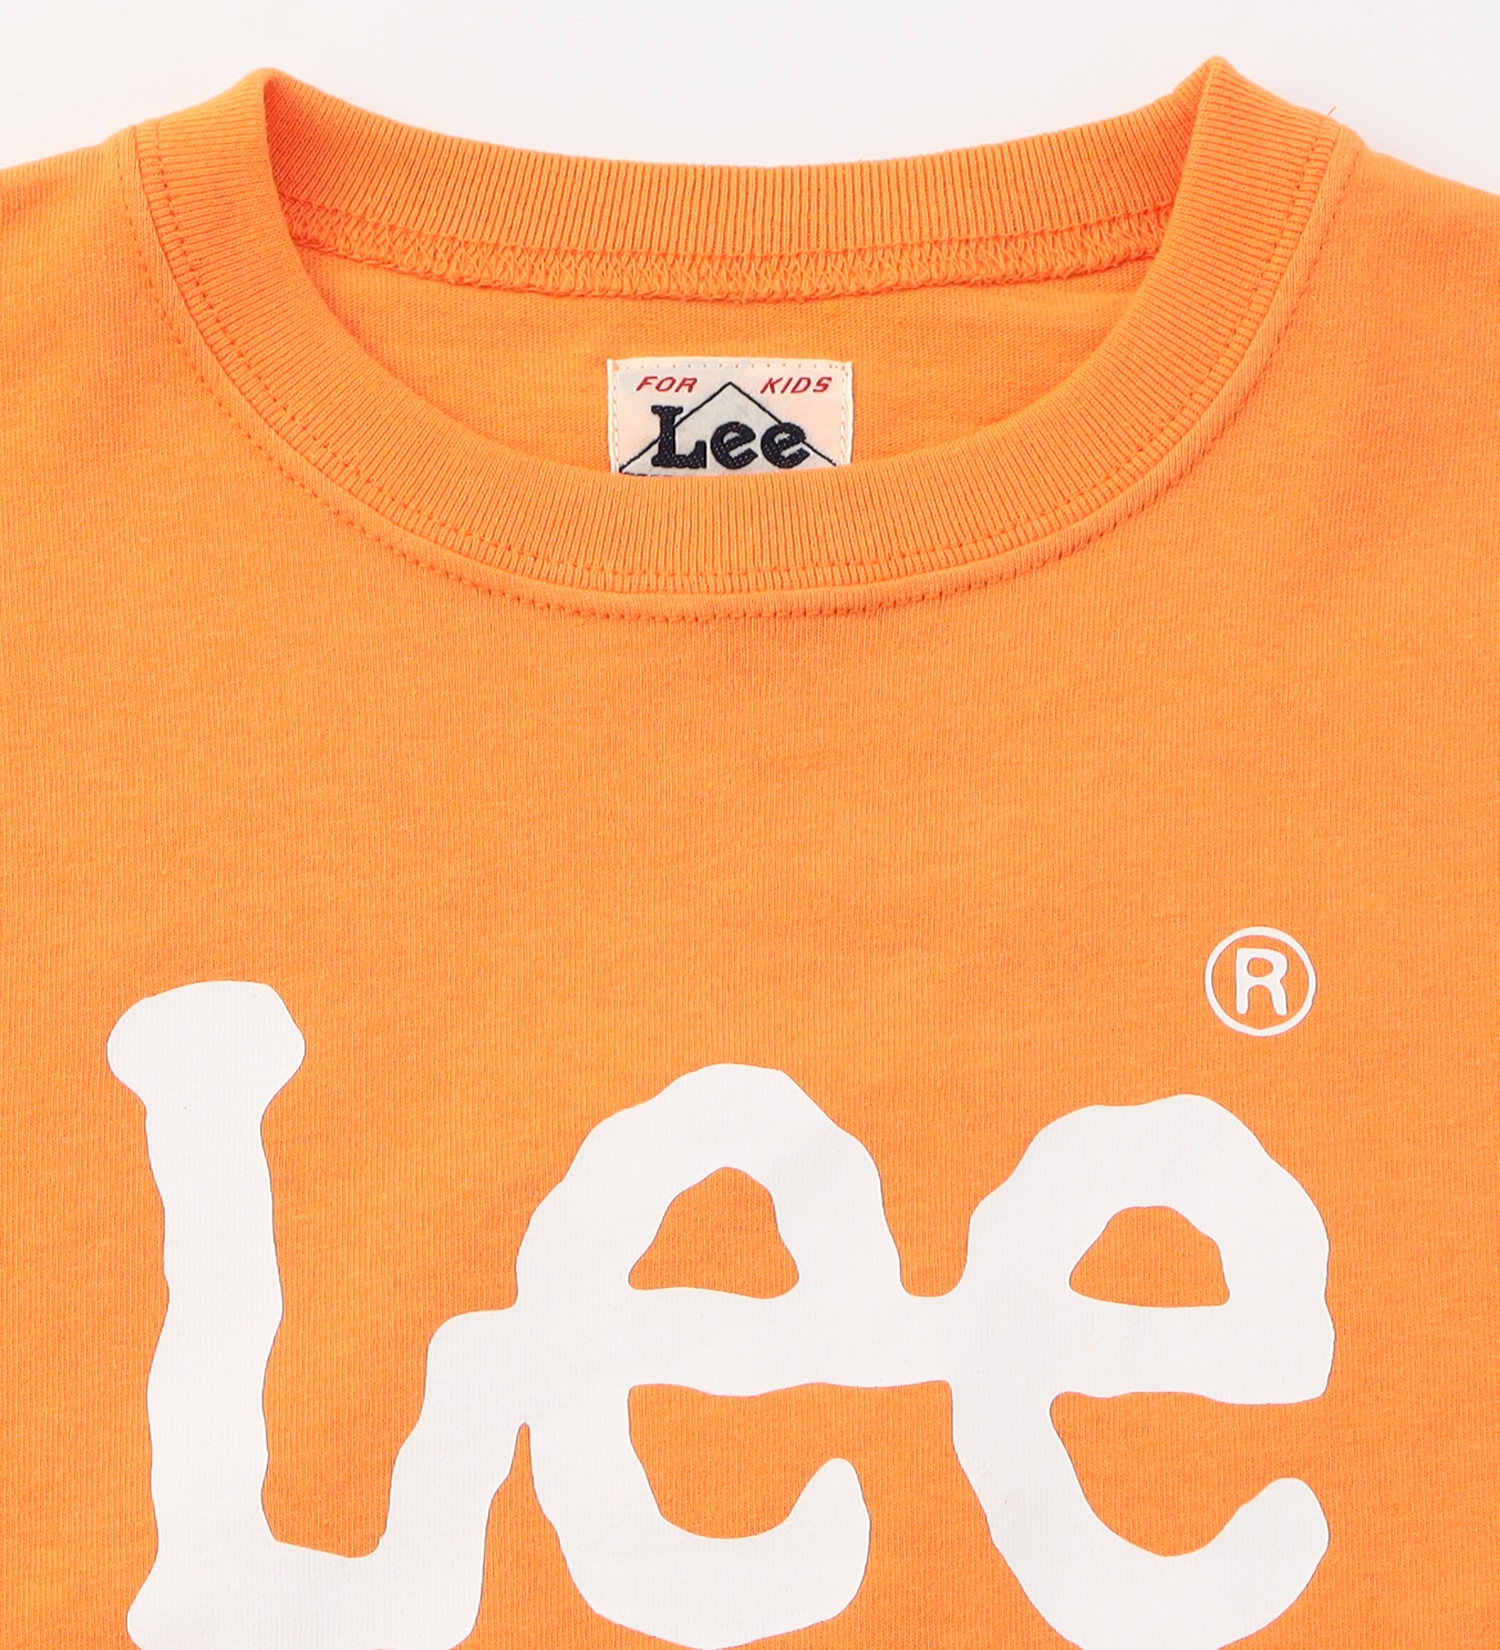 Lee(リー)の【110-150cm】キッズ Lee LOGO ショートスリーブ Tee|トップス/Tシャツ/カットソー/キッズ|オレンジ